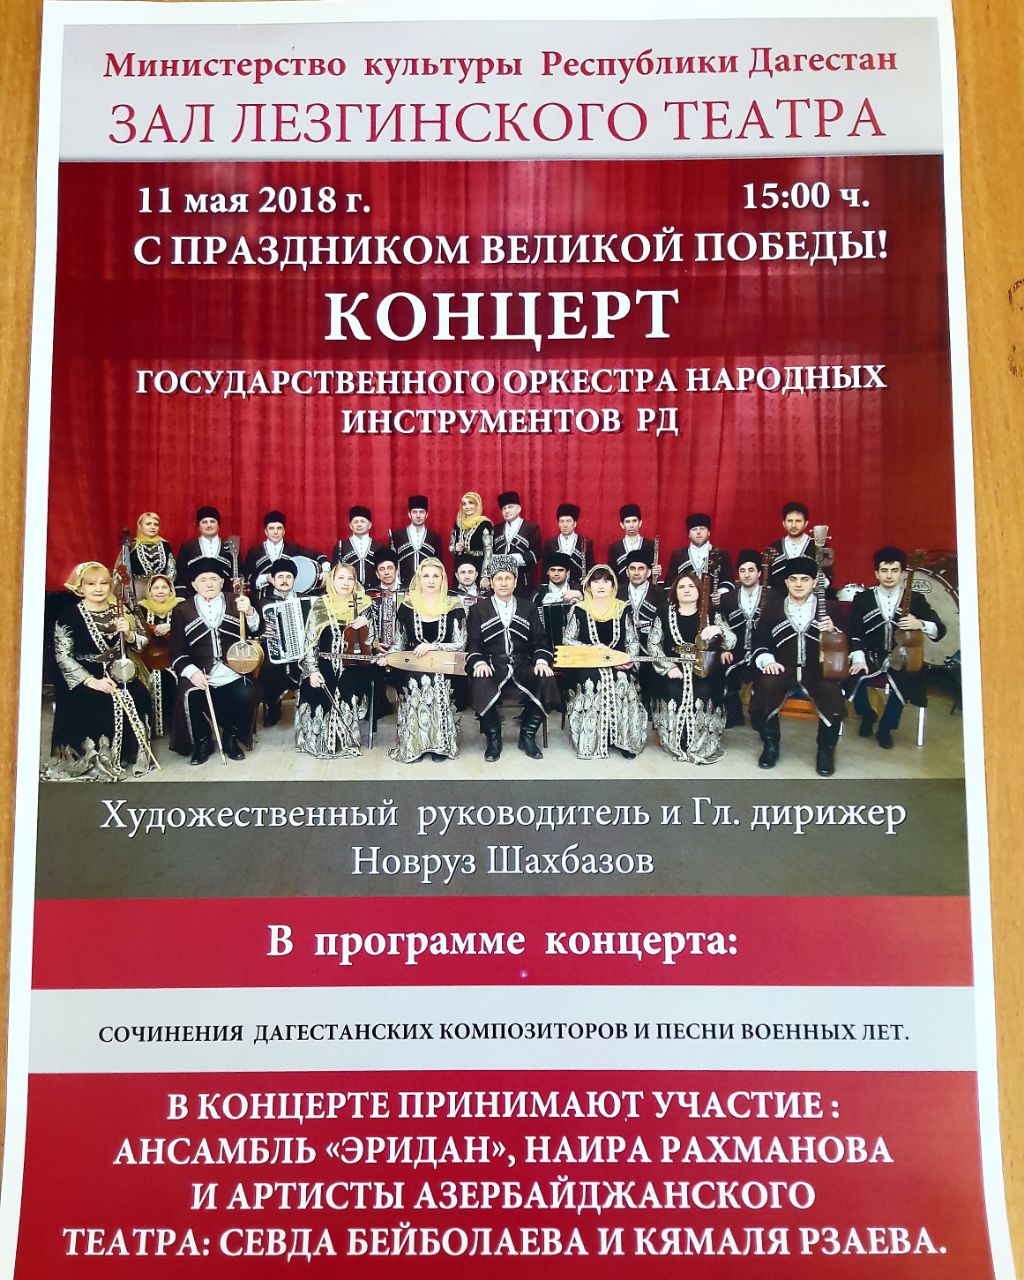 11 мая в зале лезгинского театра состоится концерт Государственного оркестра народных инструментов Республики Дагестан. 